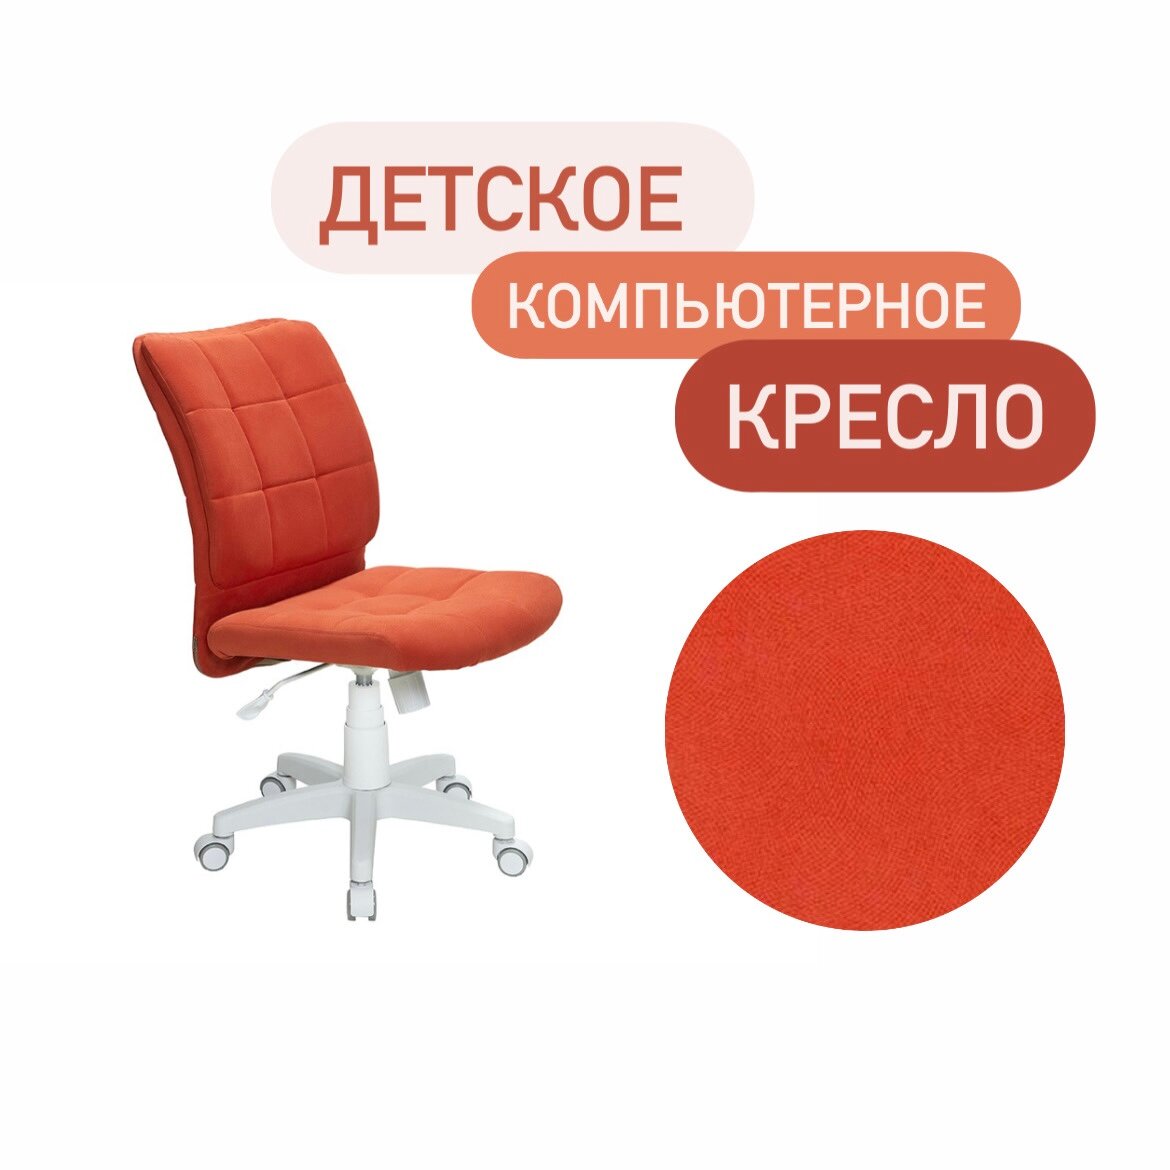 Компьютерное кресло офисный белый стул для школьника на колесиках оранжевый